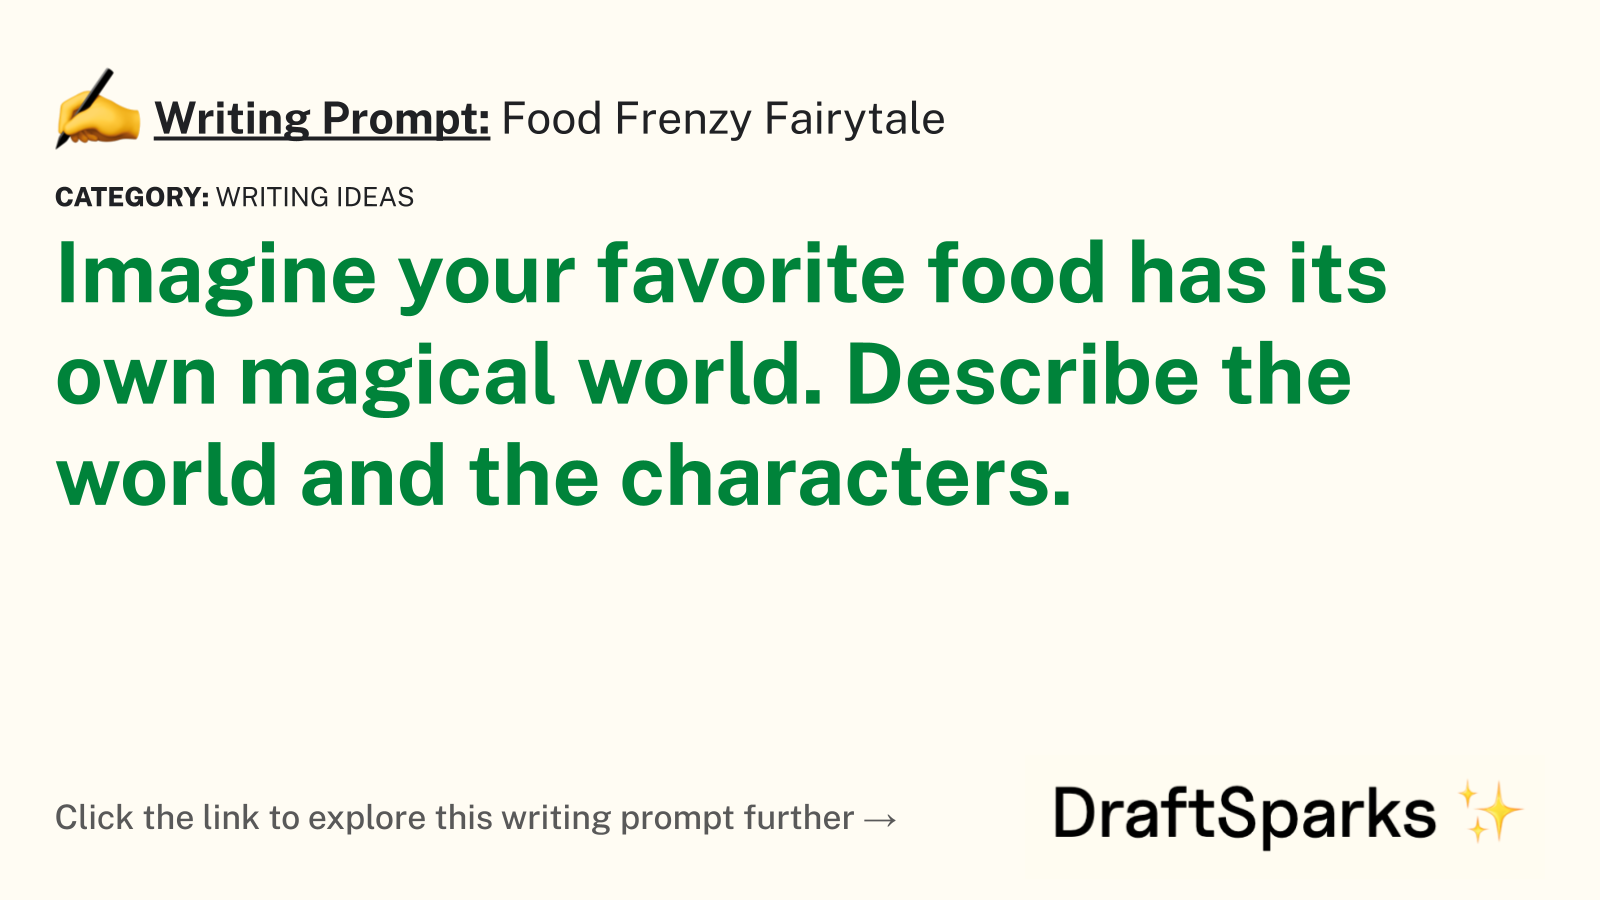 Food Frenzy Fairytale